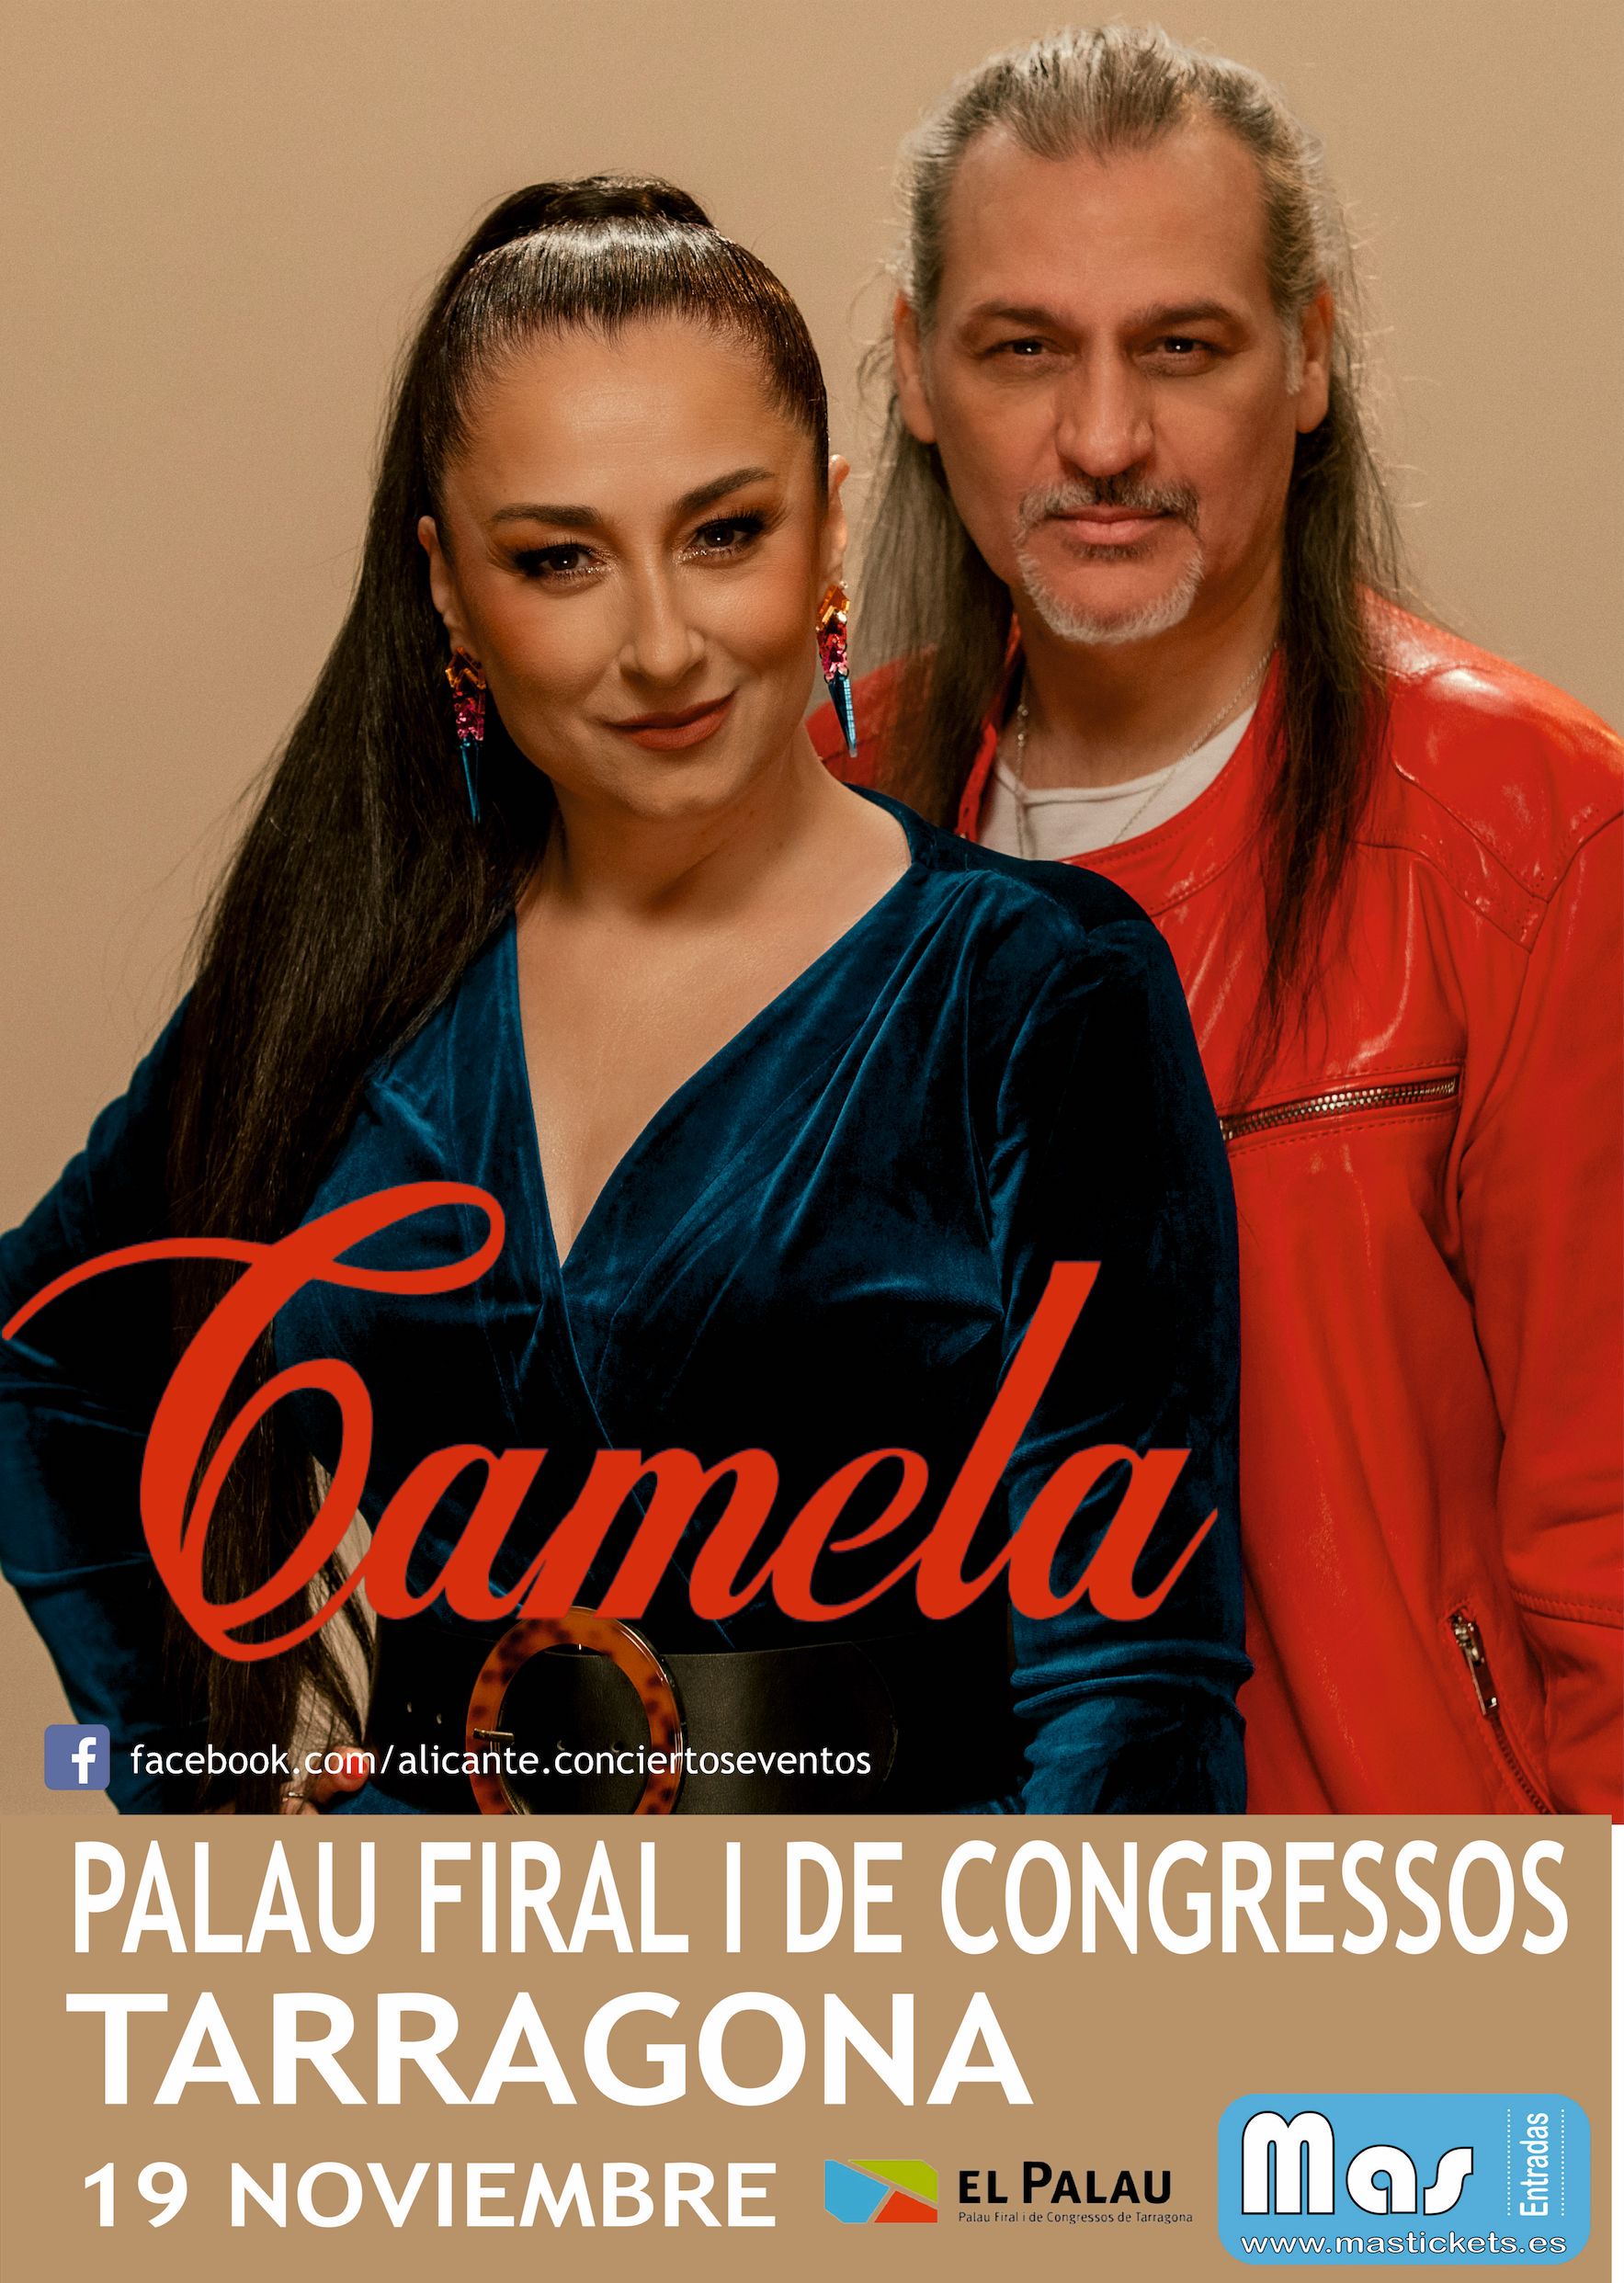 CAMELA TARRAGONA 1 - Palau Firal i de Congressos de Tarragona